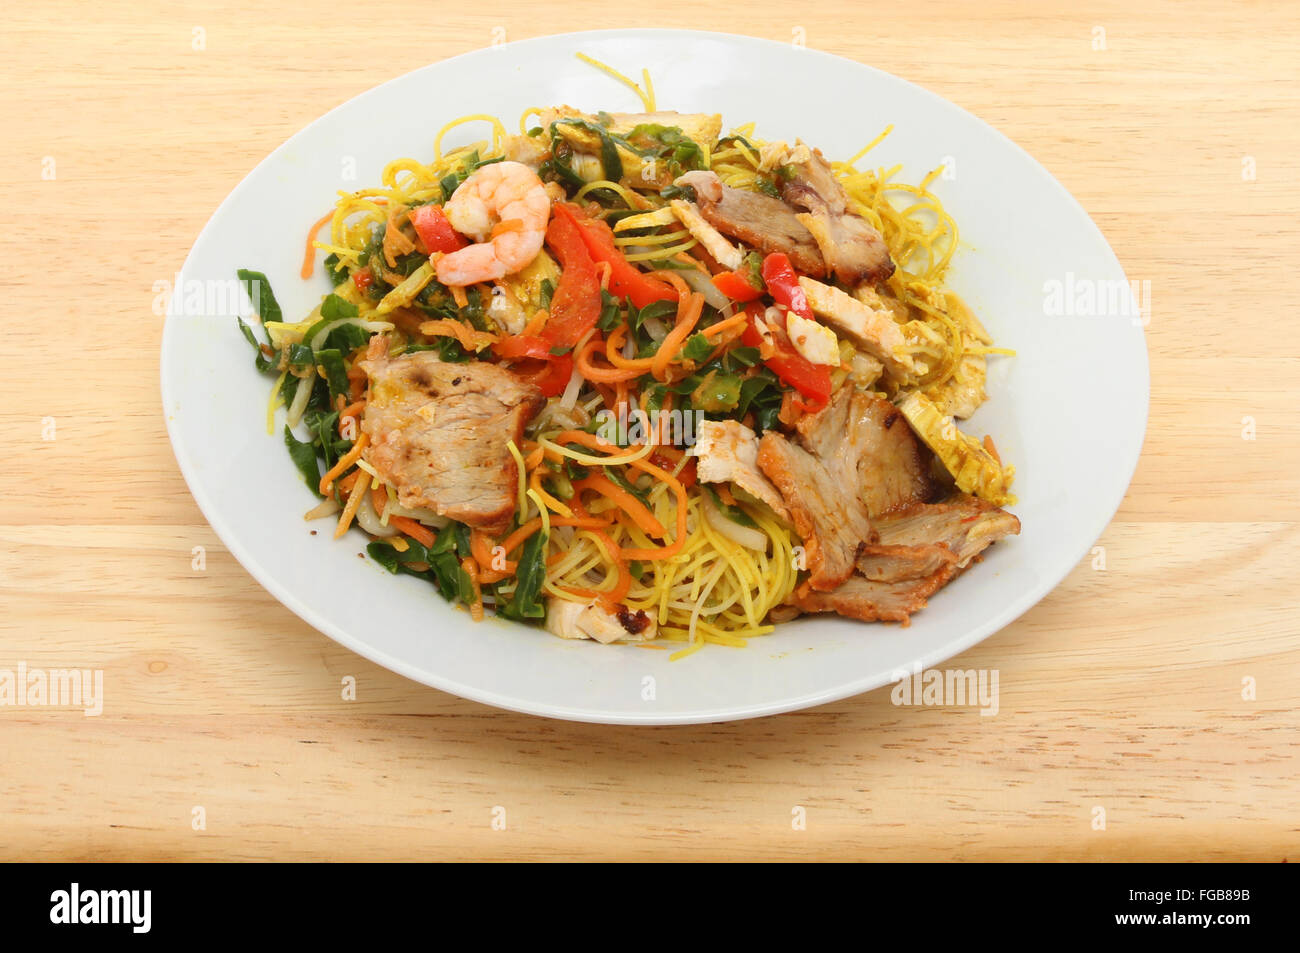 Chinesisches Essen, Singapur Nudeln in einer Schüssel auf einer hölzernen Tischplatte Stockfoto